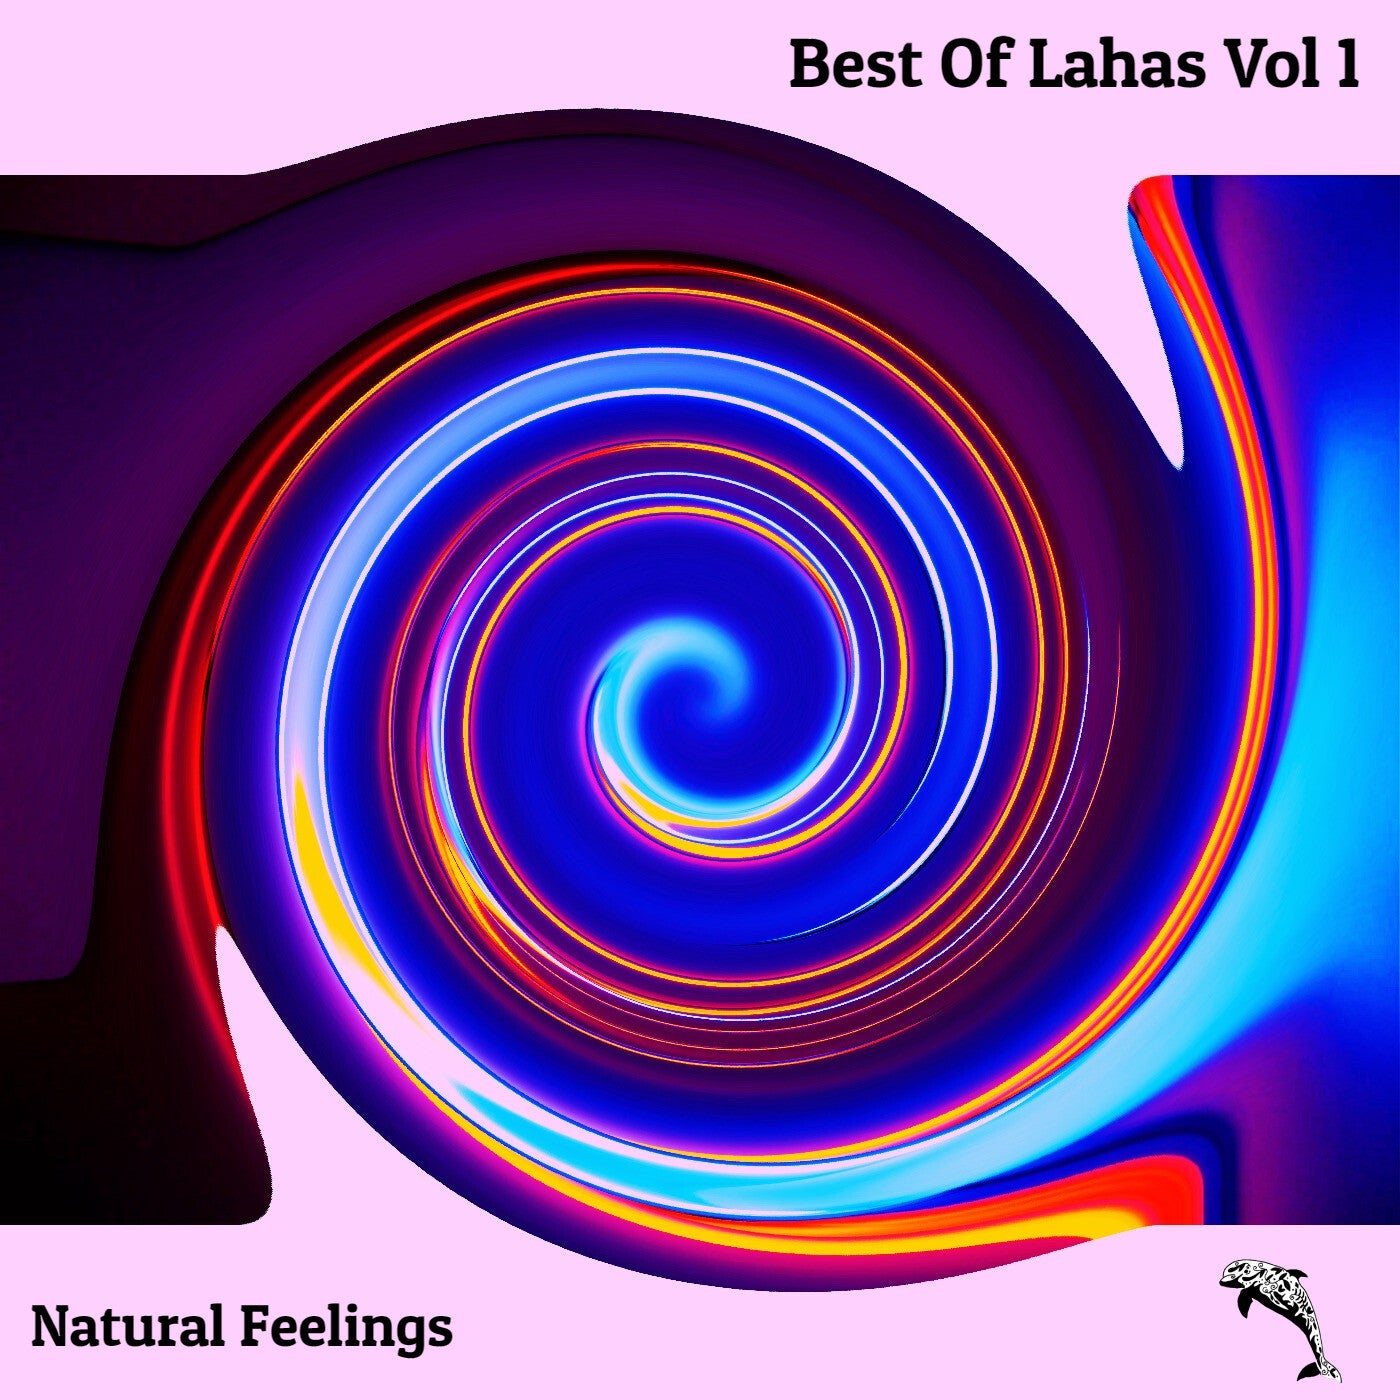 Lahas, Simon Helberg, Miiko - Best Of Lahas Vol 1 [Natural Feelings]